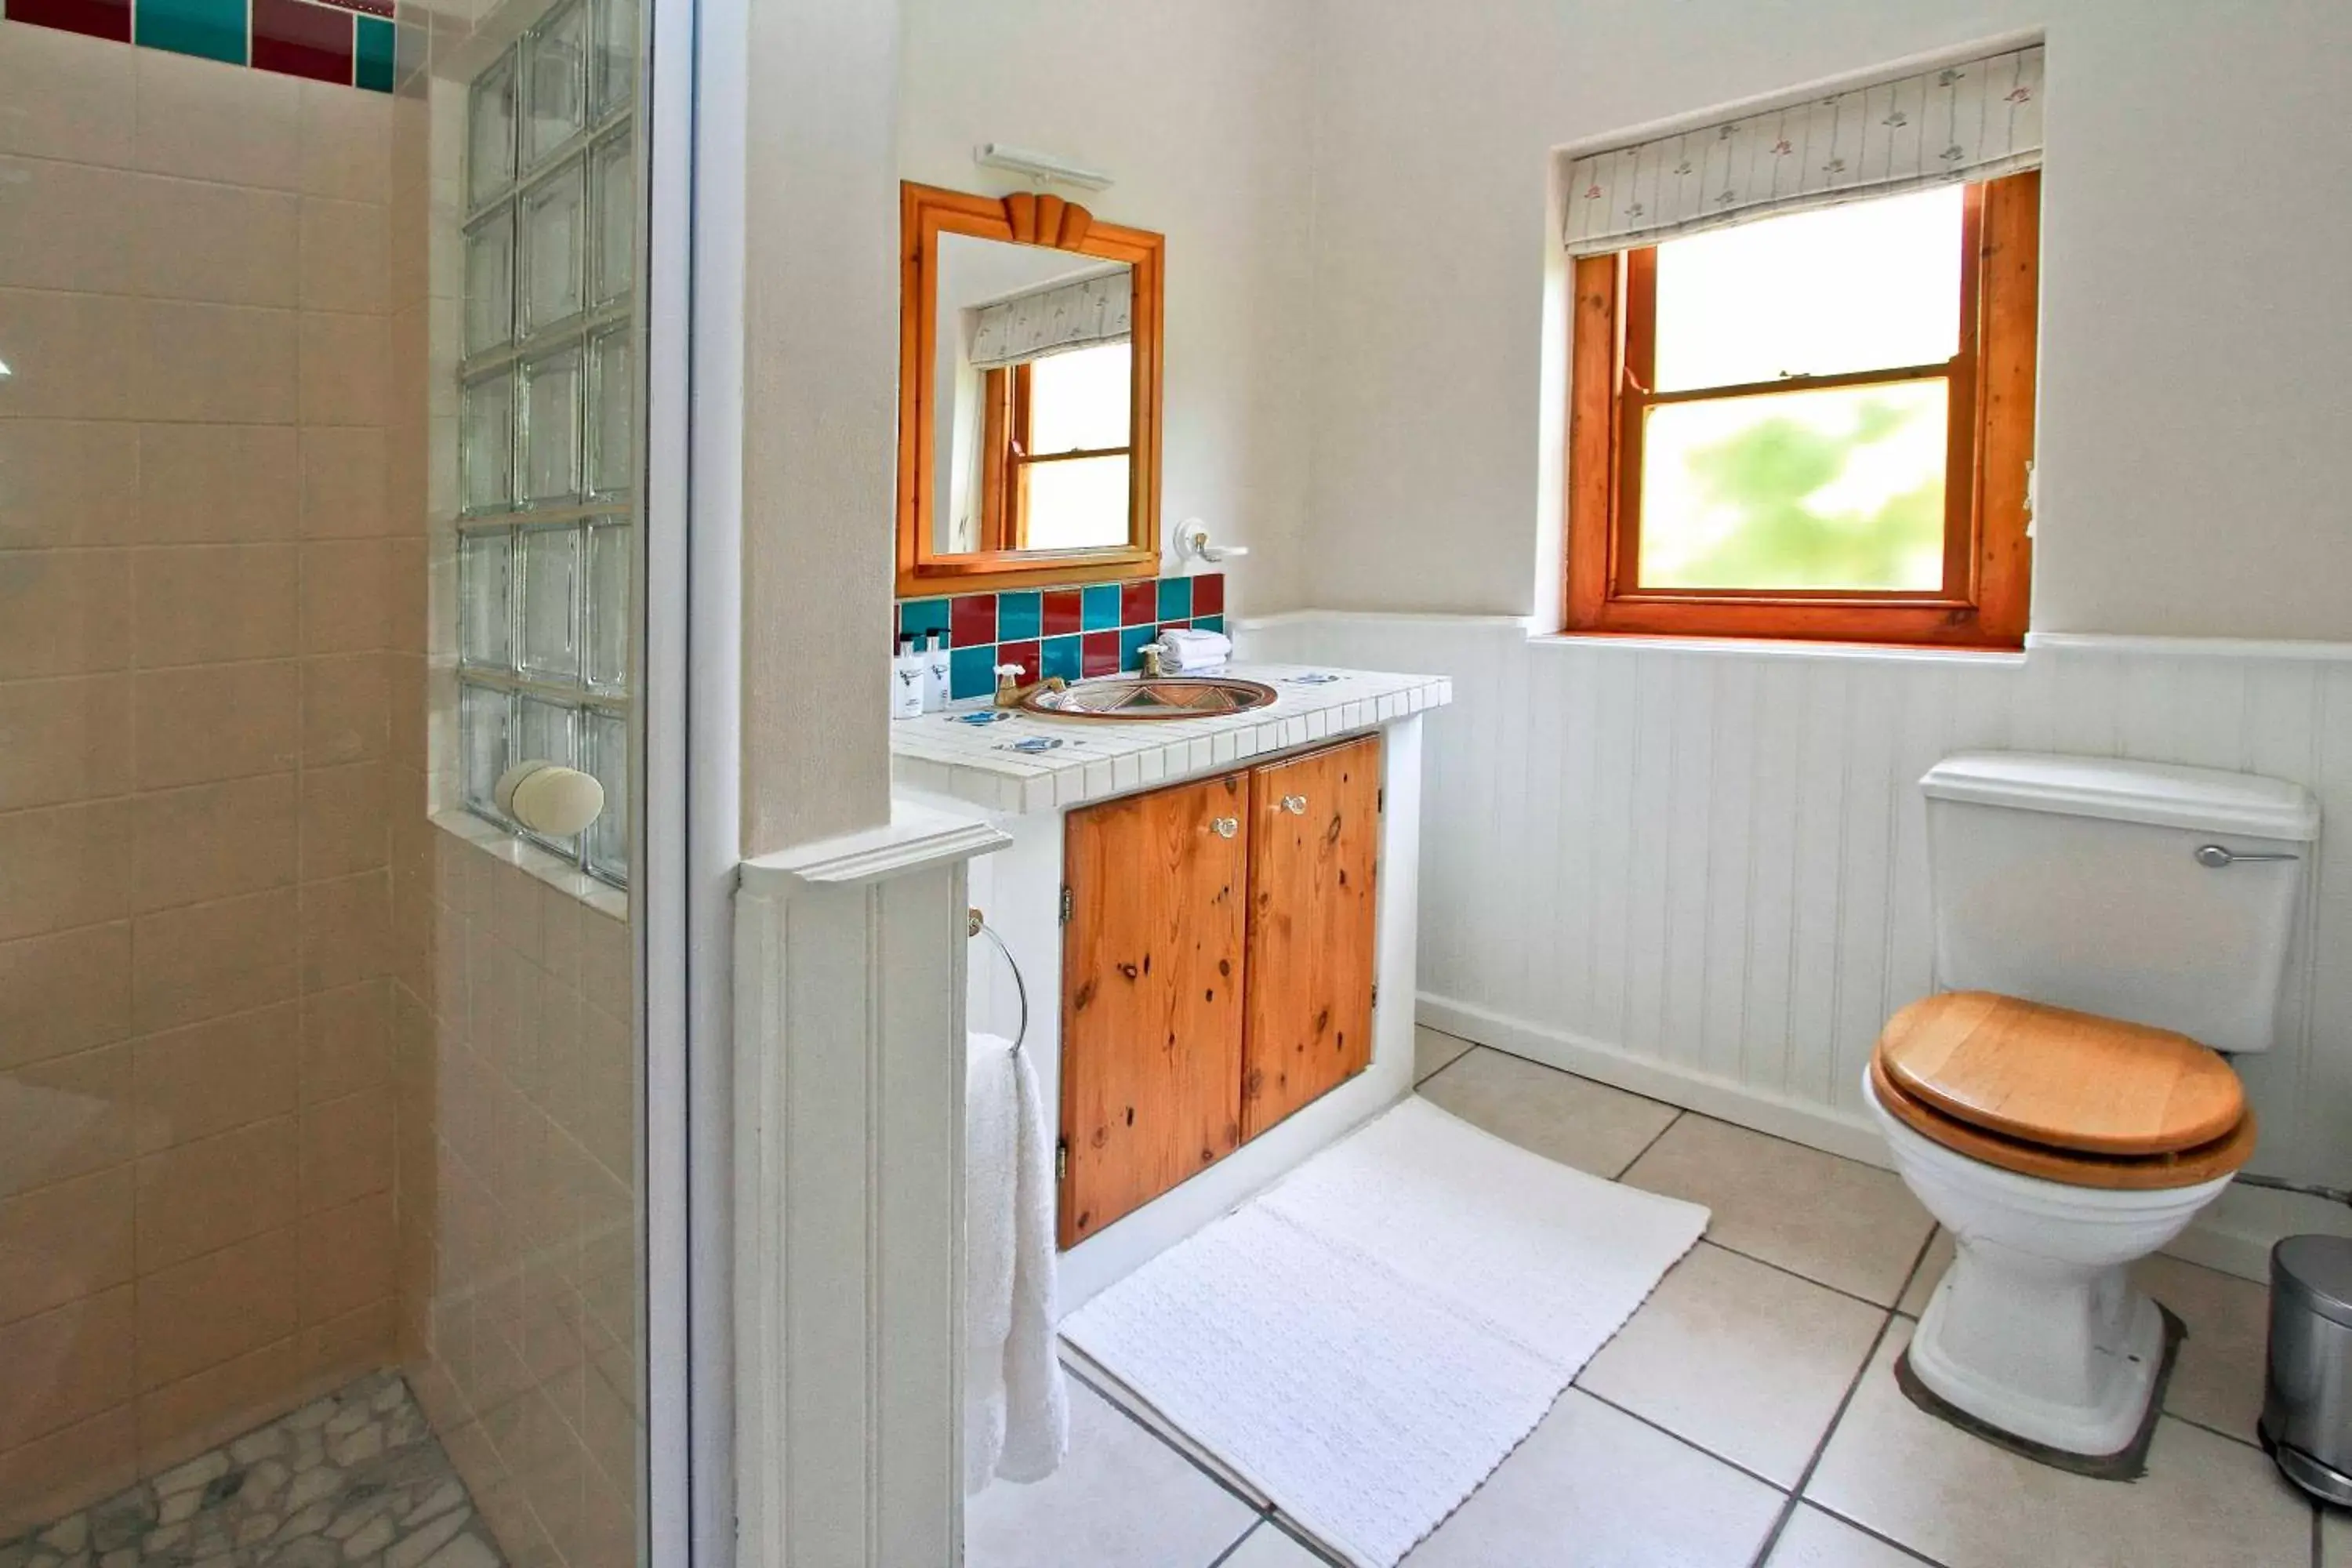 Toilet, Bathroom in Montagu Vines Guesthouse